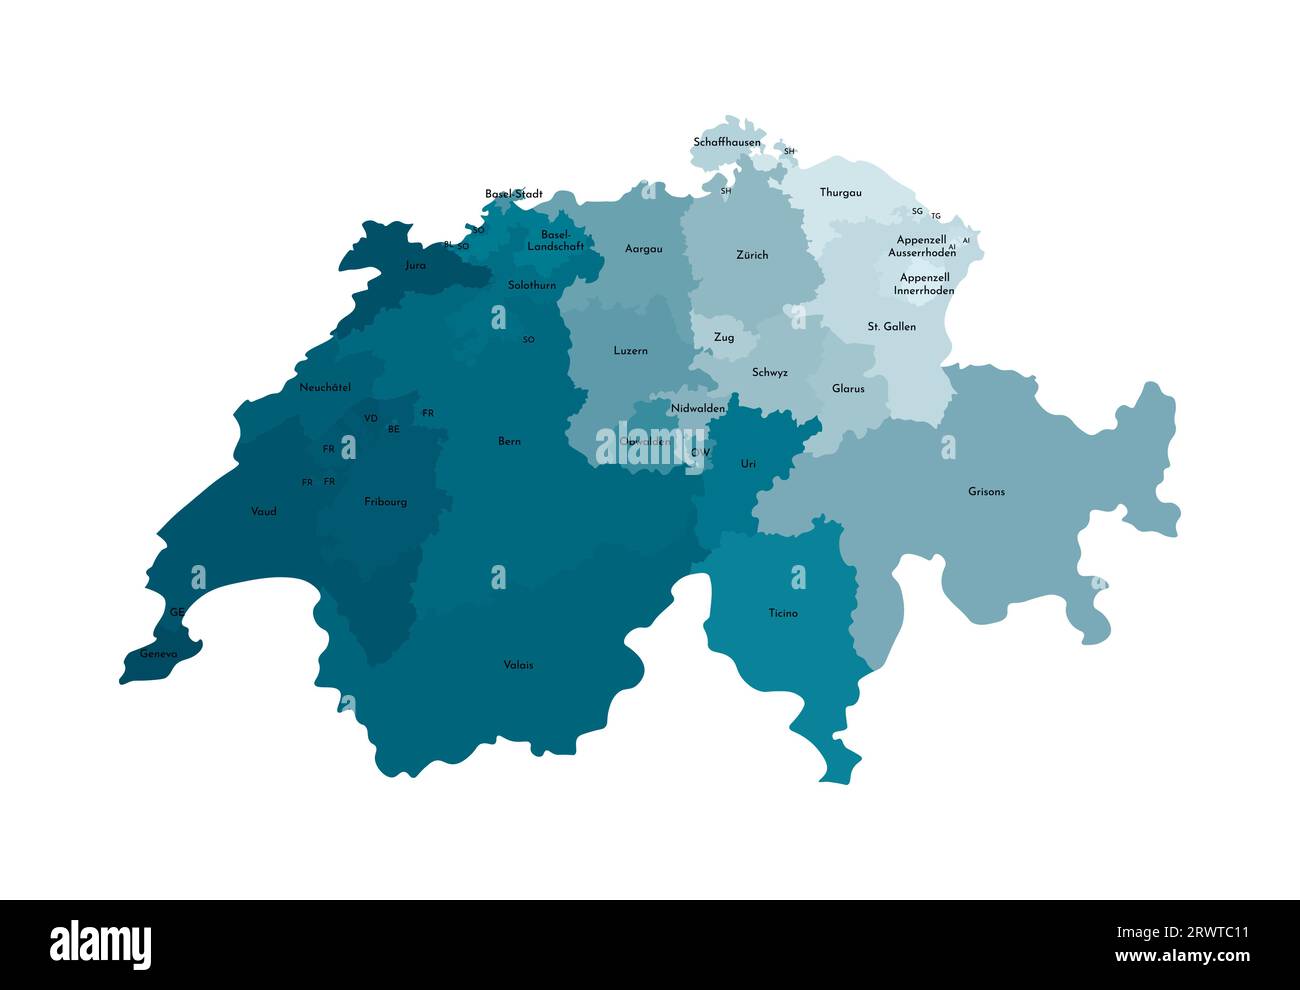 Vektorisolierte Darstellung einer vereinfachten Verwaltungskarte der Schweiz. Grenzen und Namen der Regionen. Farbenfrohe, khakifarbene Silhouetten. Stock Vektor